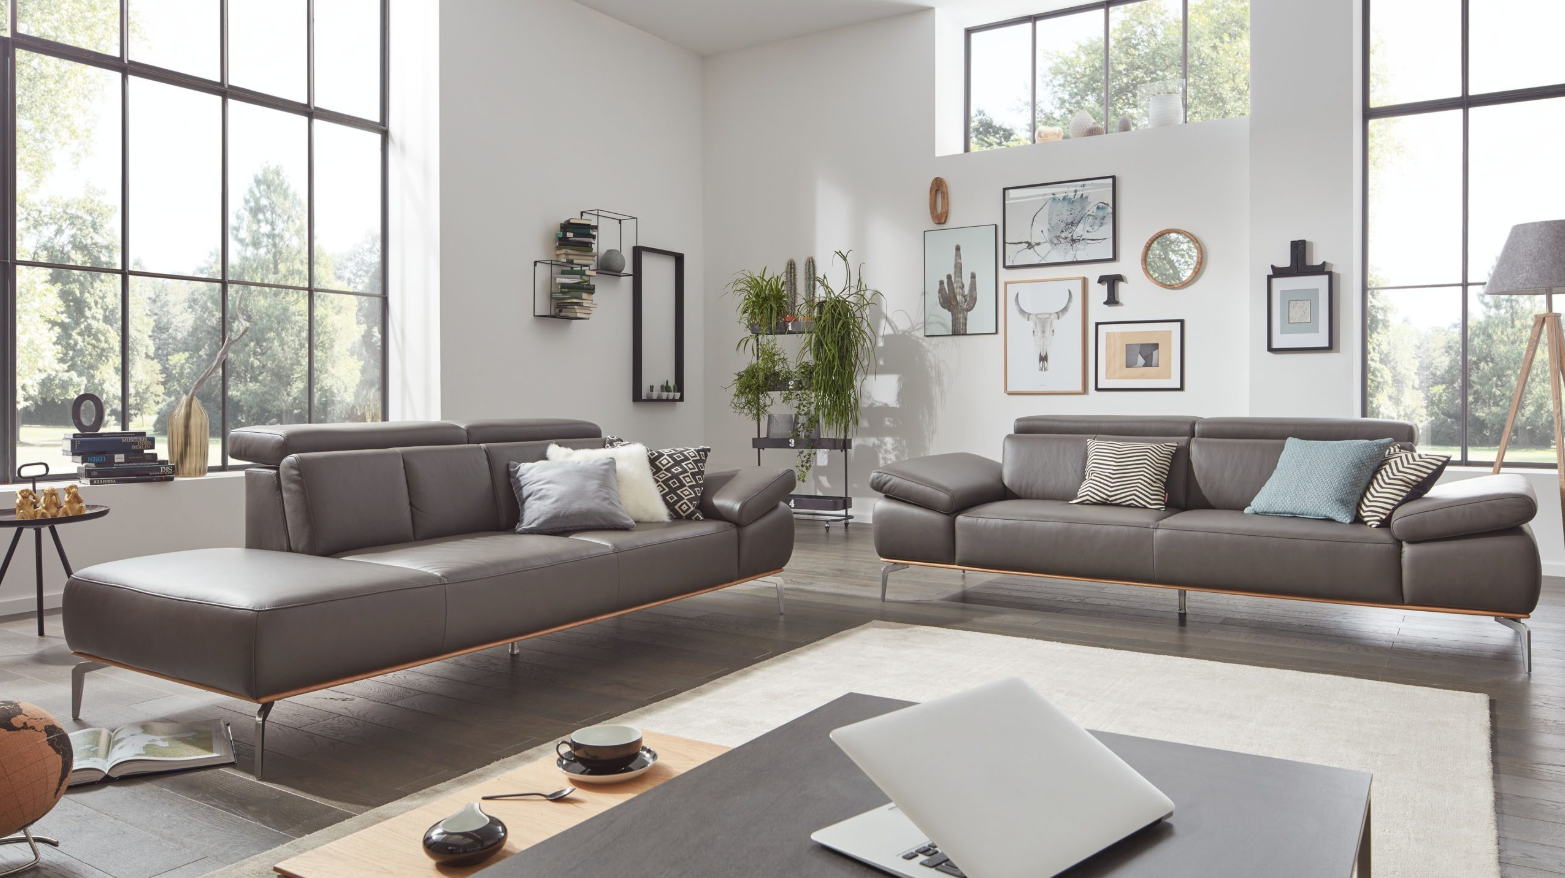 interliving-sofa-serie-4003-reinigung-von-polstern